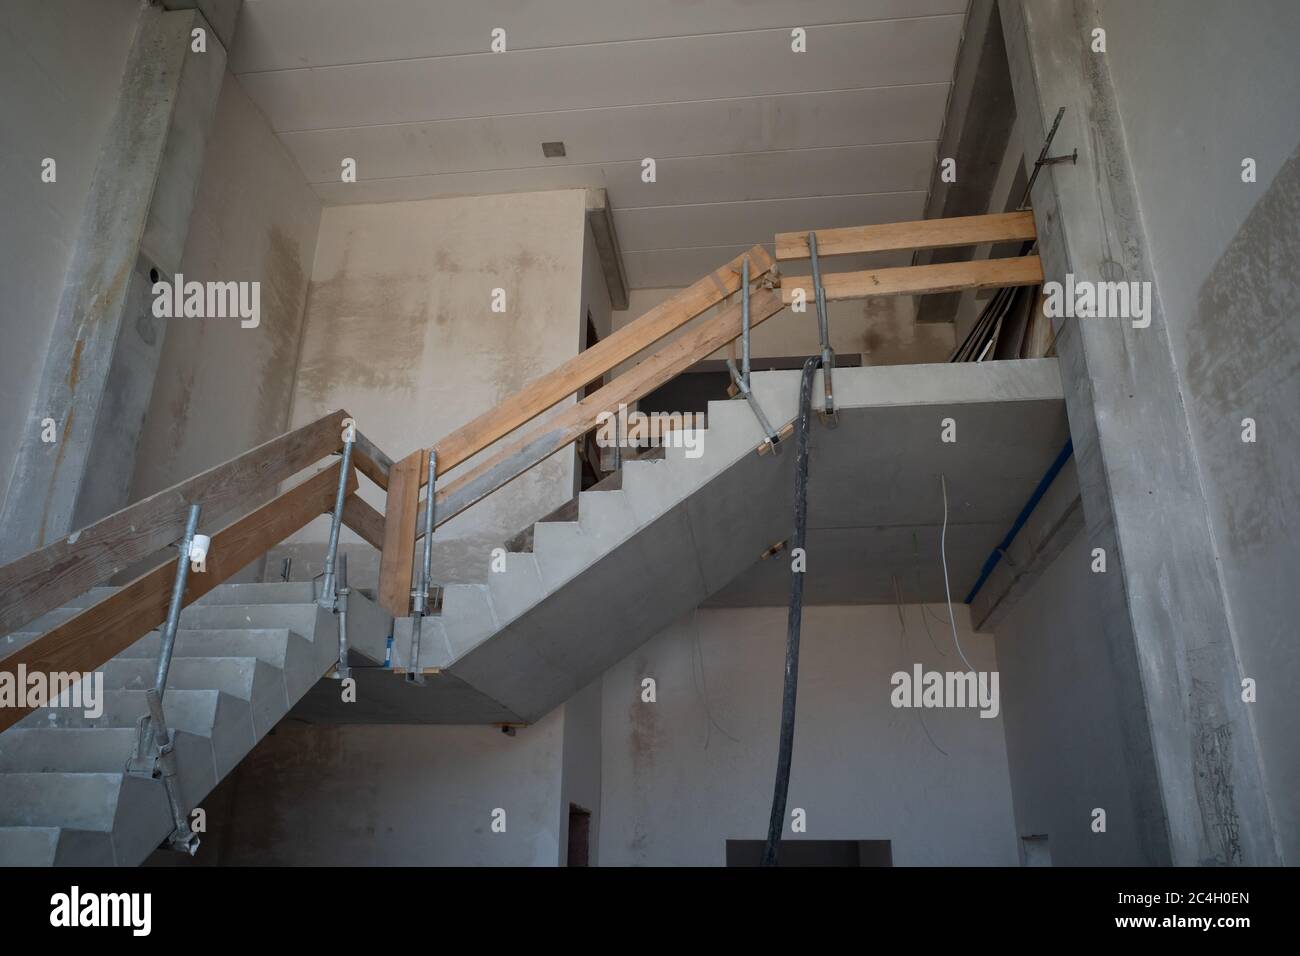 Auf einer Baustelle wird ein provisorisches Treppengeländer gebaut  Stockfotografie - Alamy